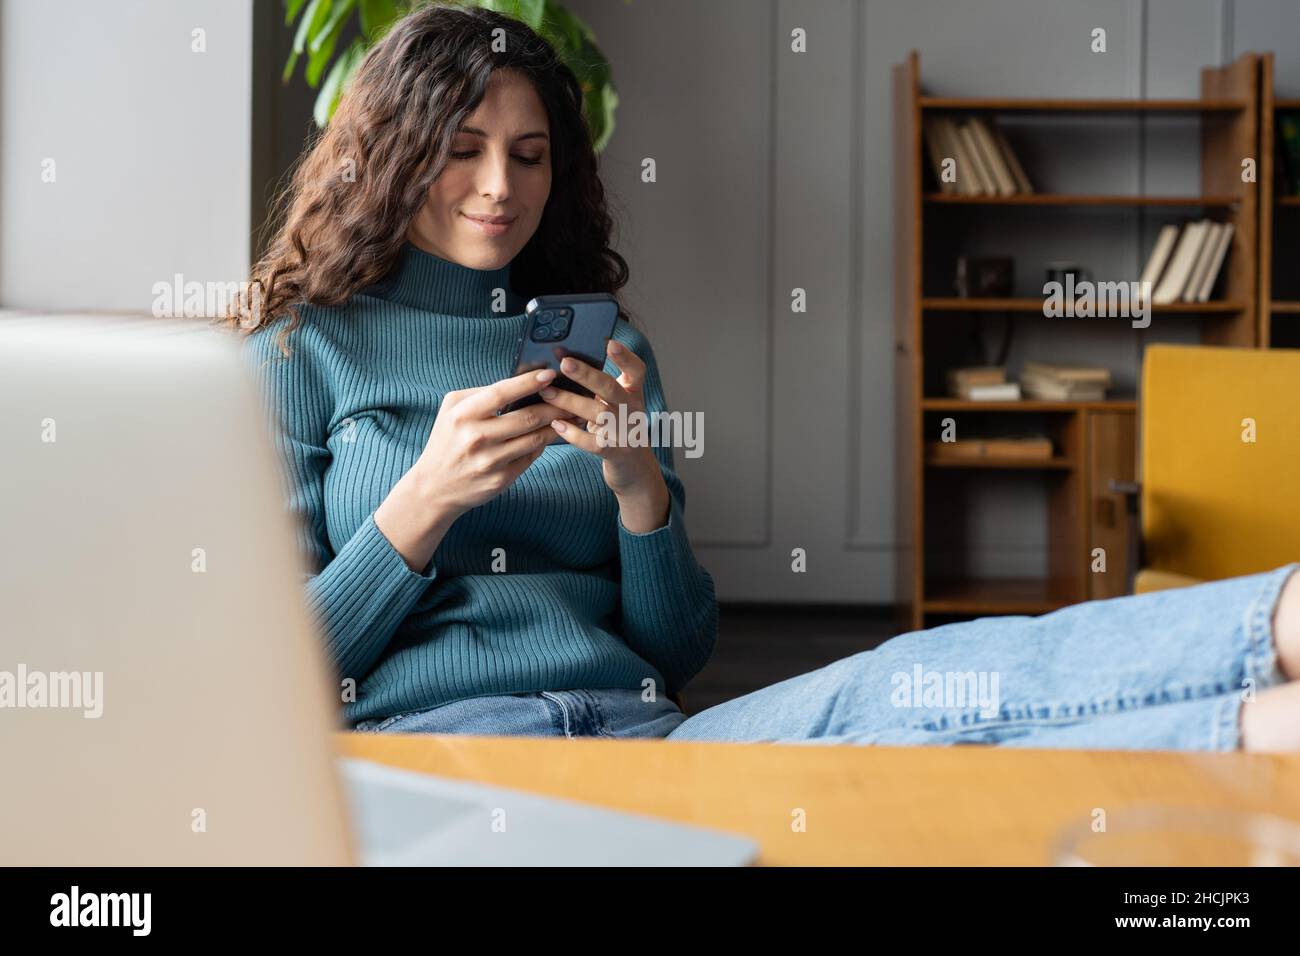 Junge lächelnde Frau hält Smartphone und chattet online, während sie sich im gemütlichen Heimbüro entspannt Stockfoto